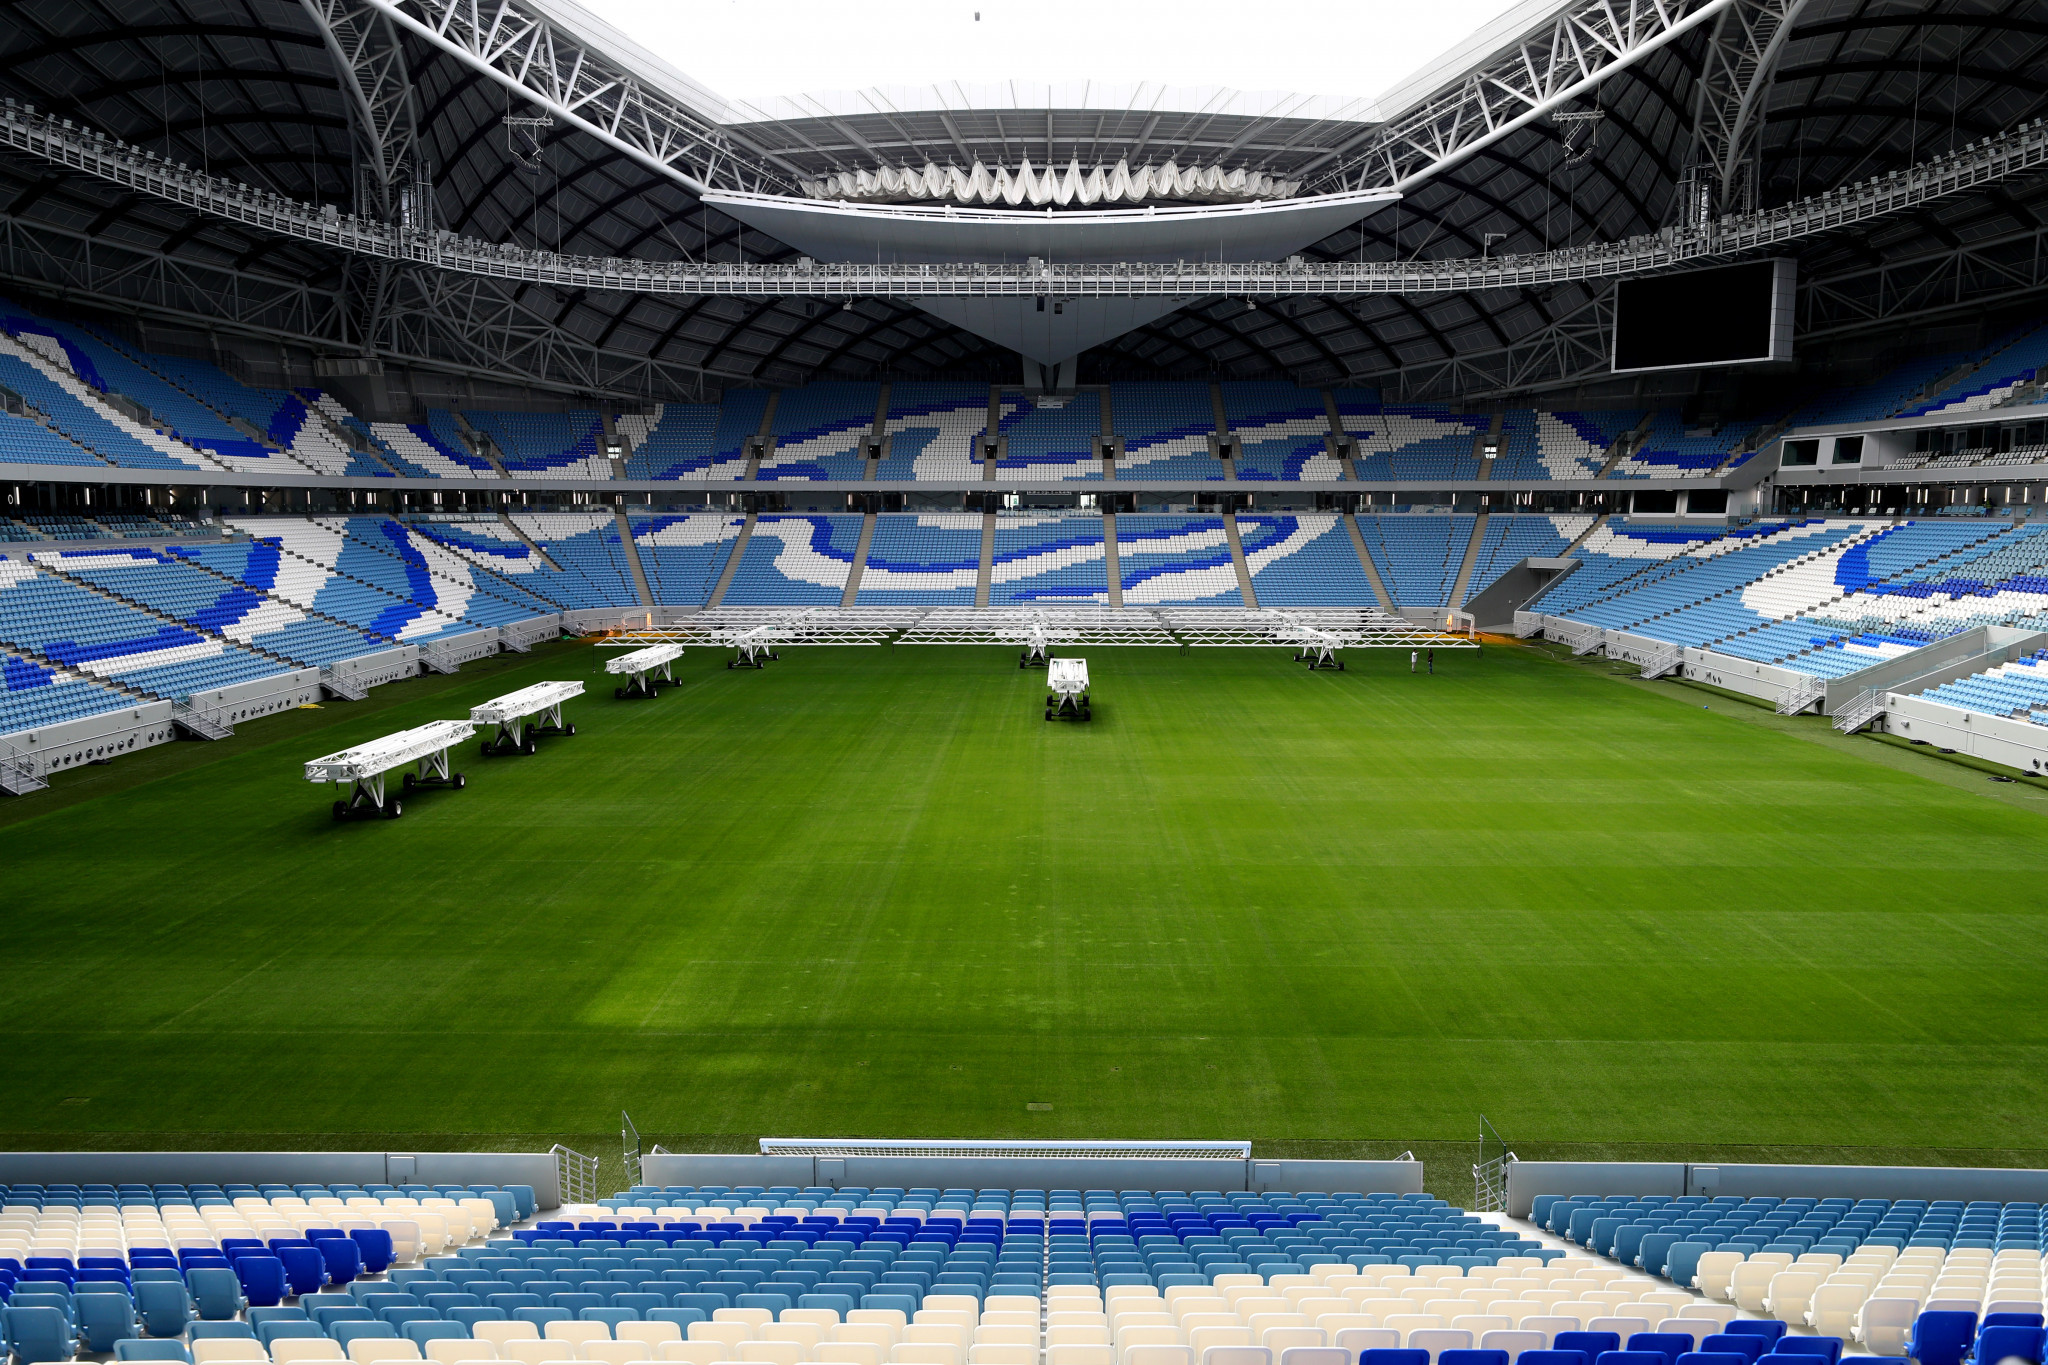 La FIFA a souscrit une assurance pour la Coupe du monde Qatar 2022 à hauteur de 900 millions de dollars © Getty Images